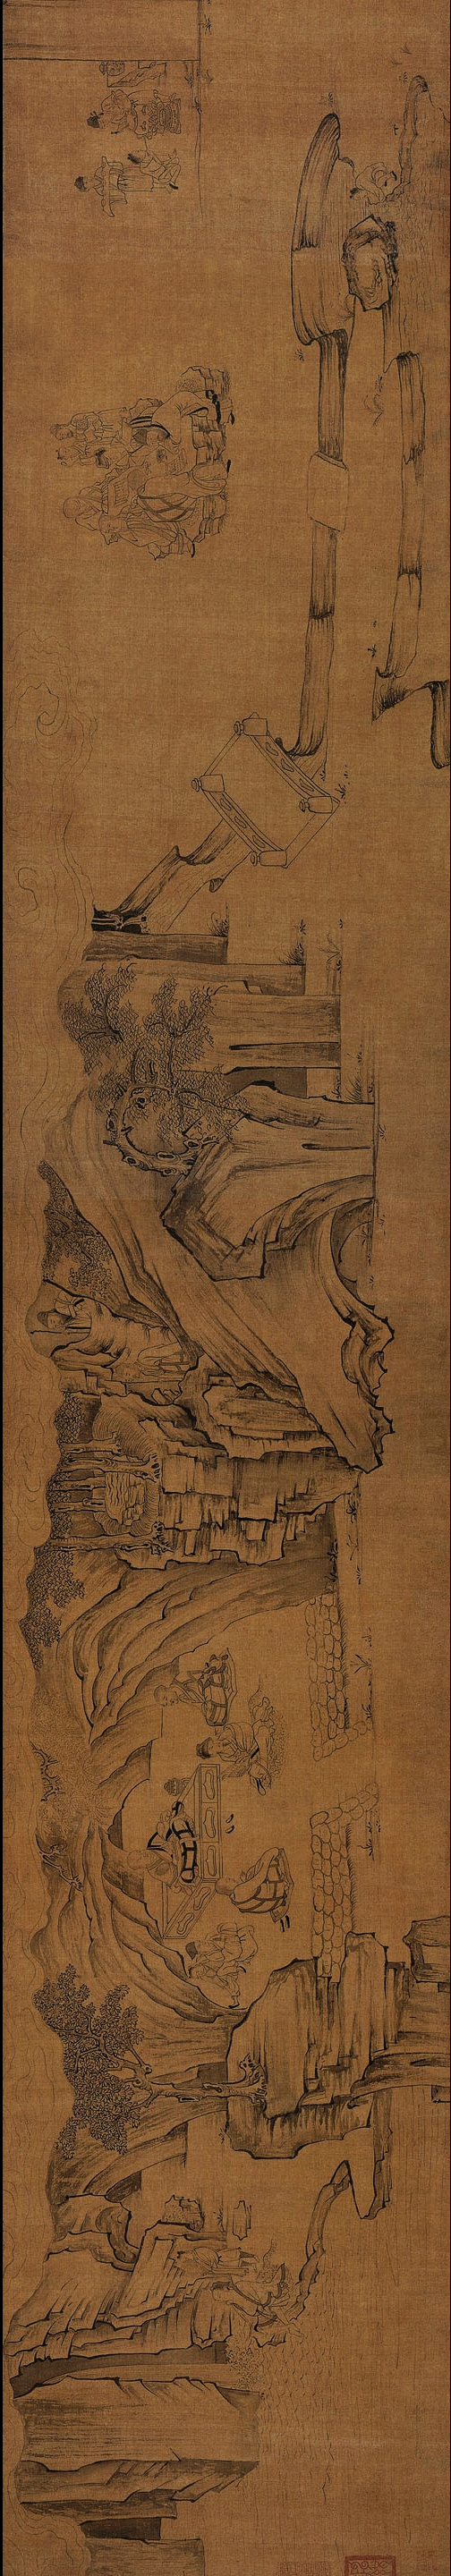 【图2】《莲社图》，绢本水墨，纵60.1厘米，横459.8厘米，上海博物馆藏（局部）